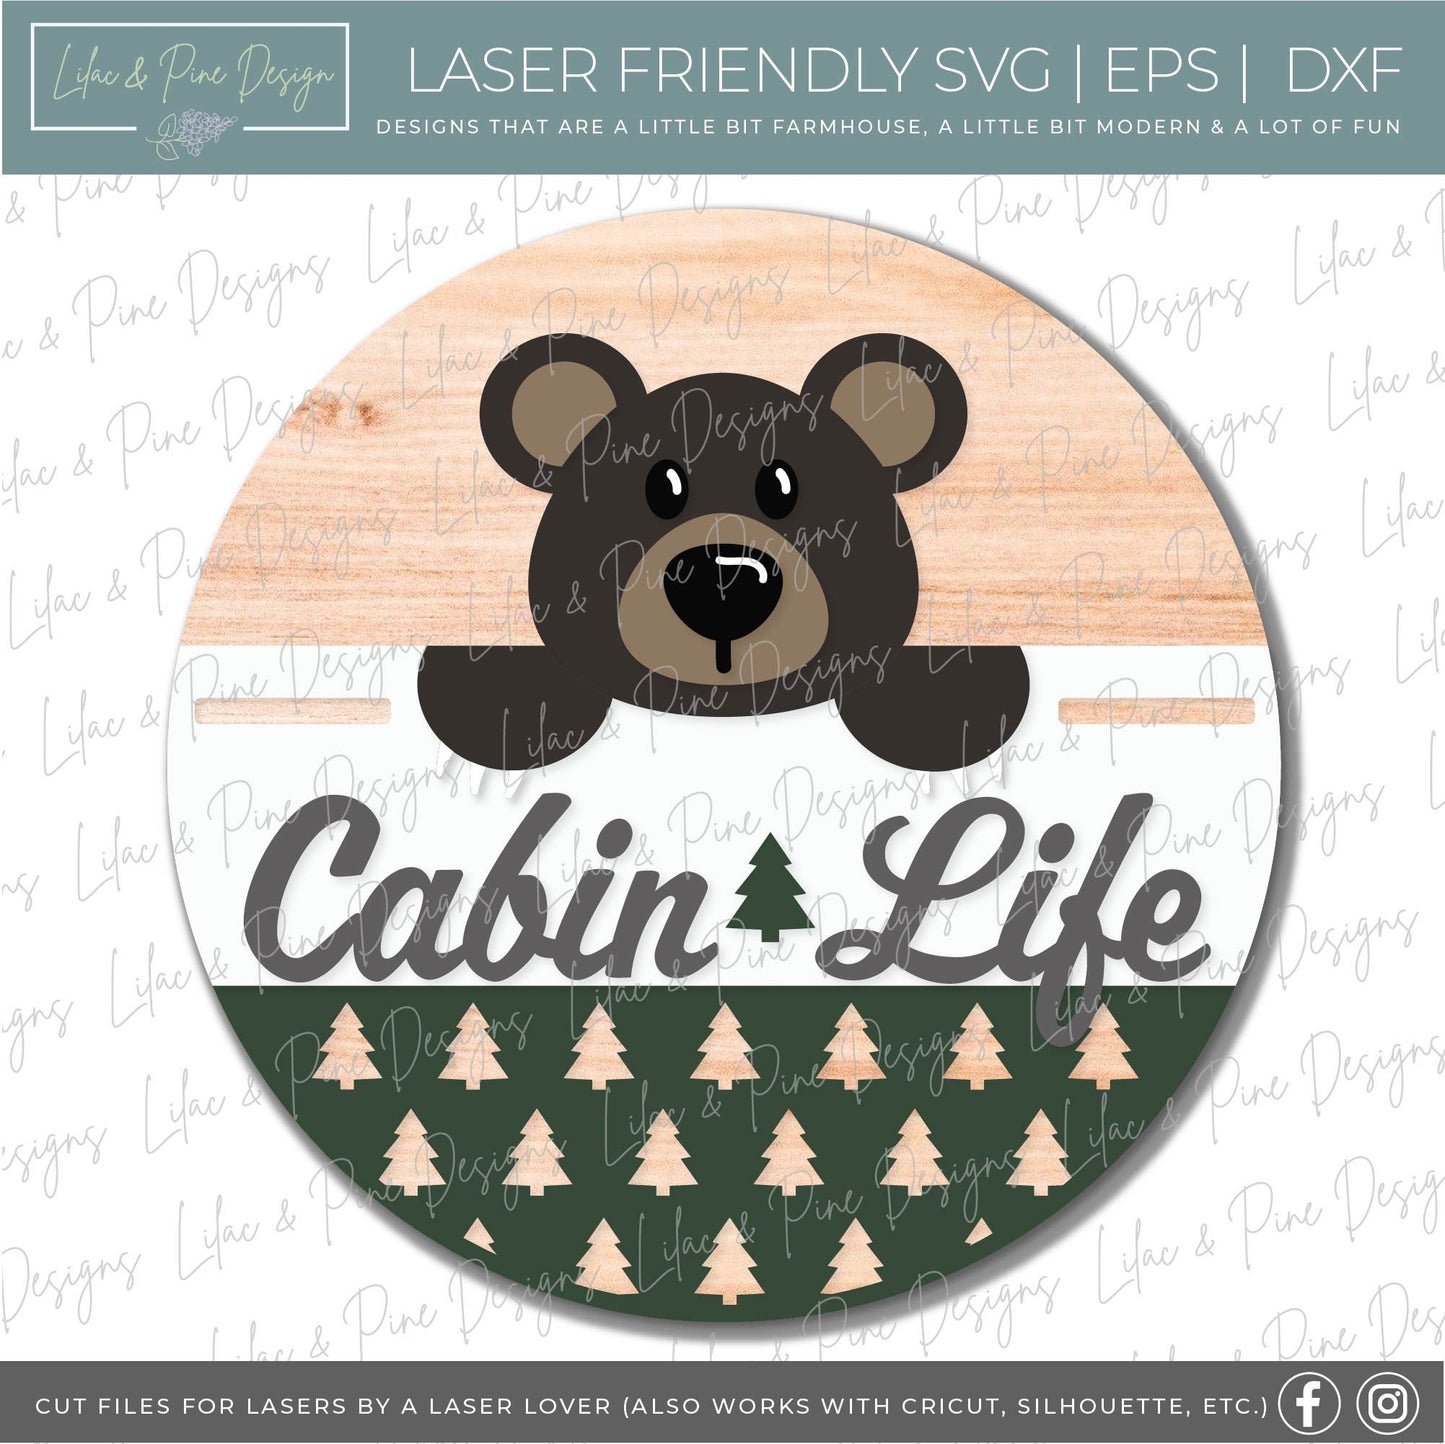 Bear door hanger SVG, Cabin welcome sign, Cabin life home decor, Summer cabin SVG, pine tree pattern, Glowforge cut file, laser SVG file